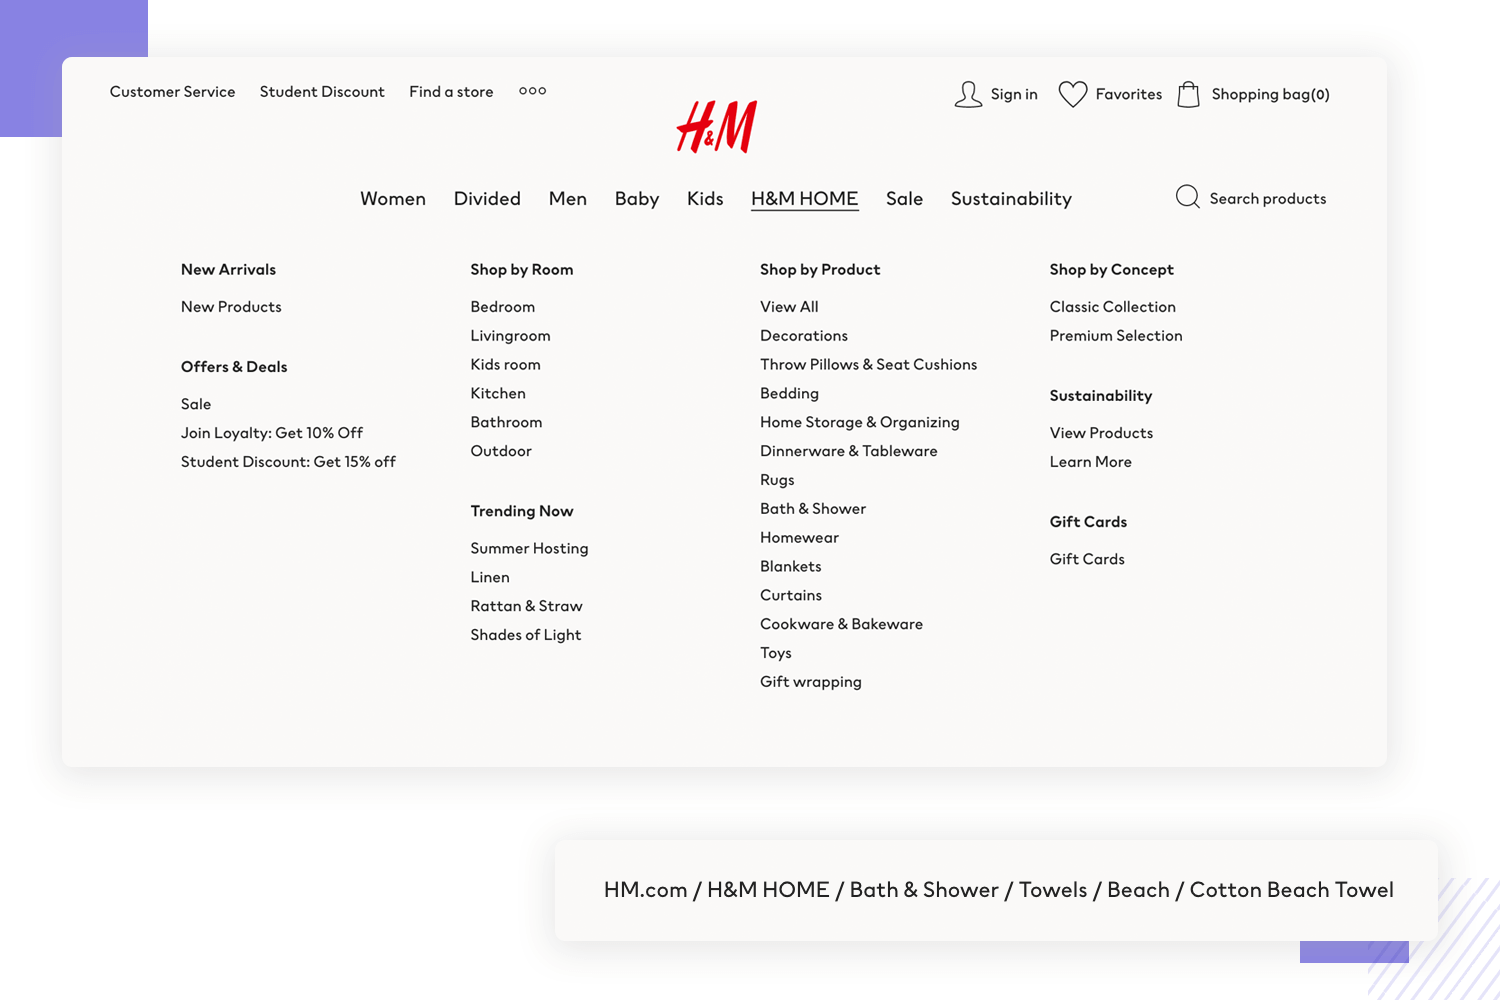 H&M as ux design example of mega menu navigation